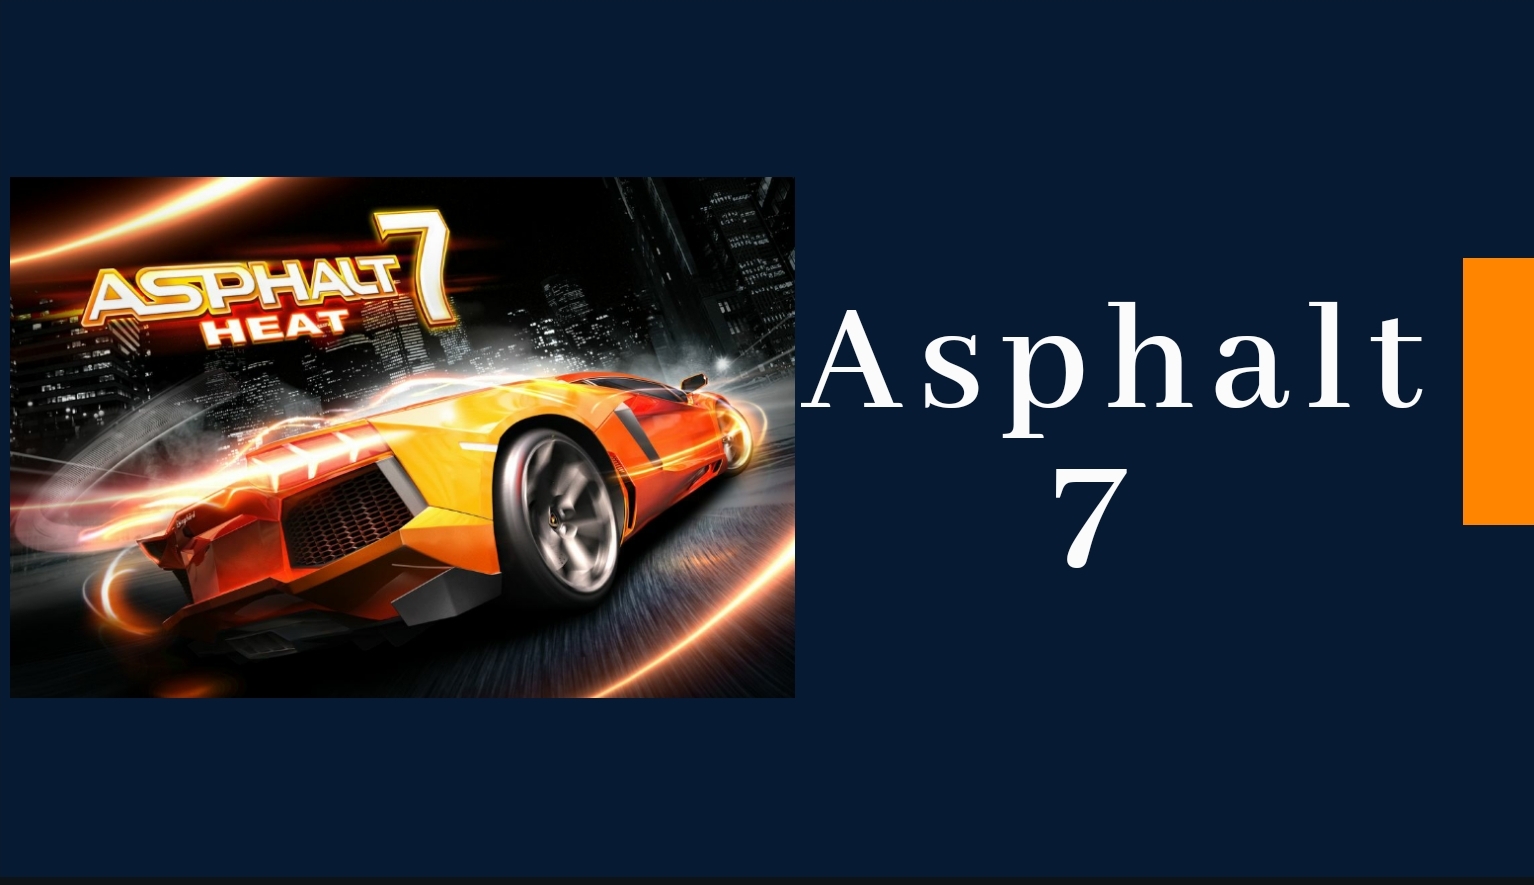 asphalt 7 apk download free